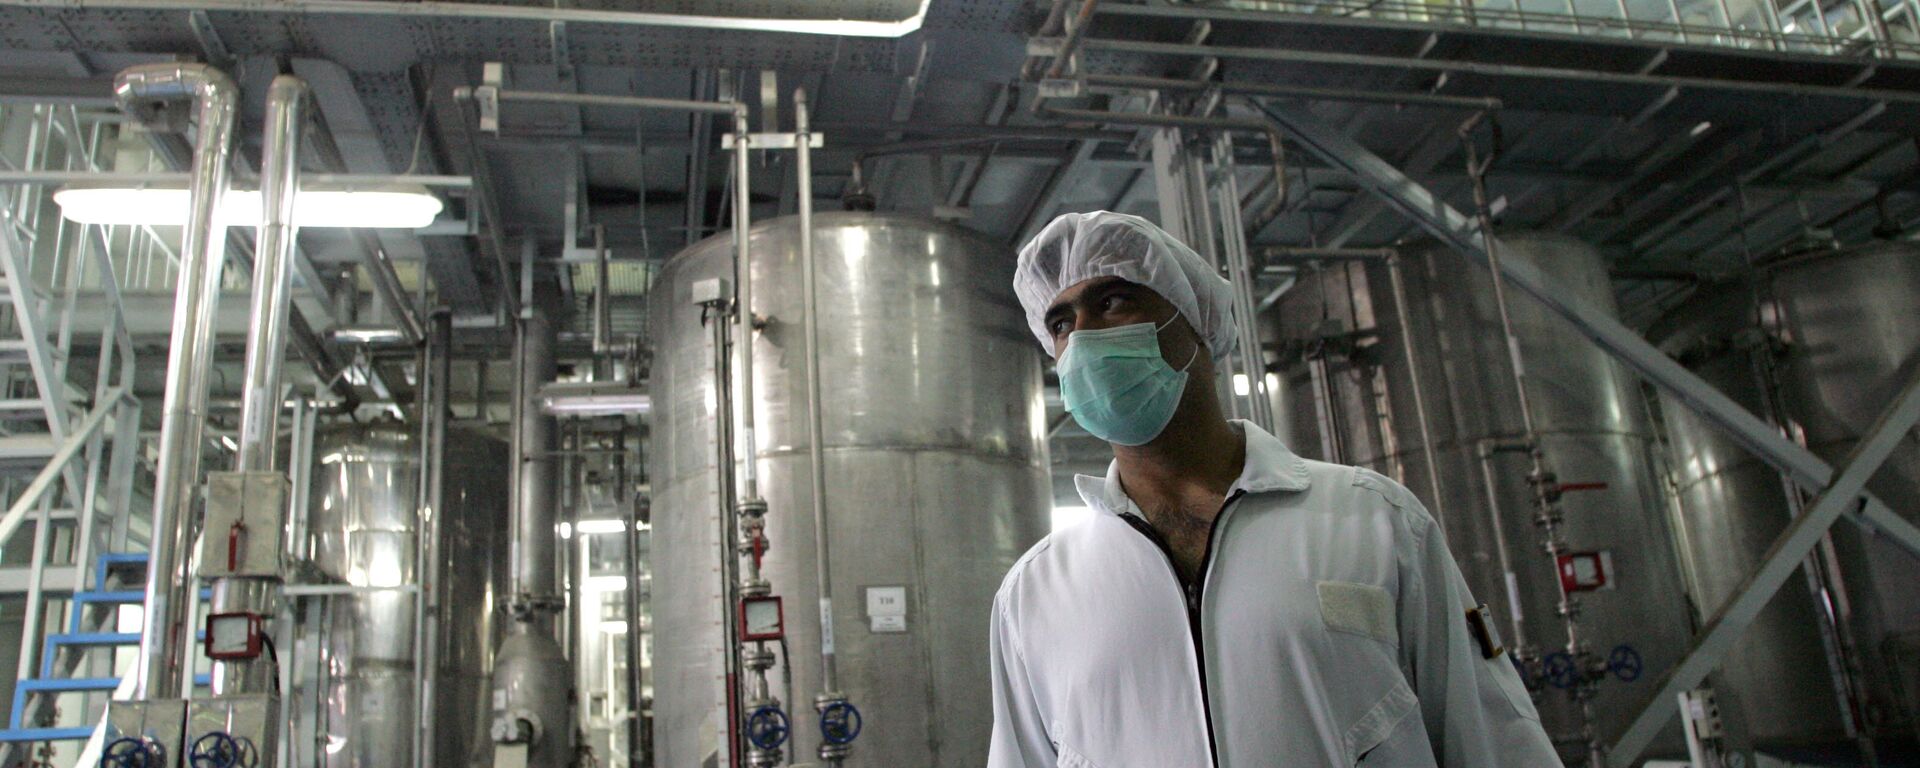 Un tecnólogo iraní en la planta de la conversión nuclear de Isfahan - Sputnik Mundo, 1920, 12.04.2021